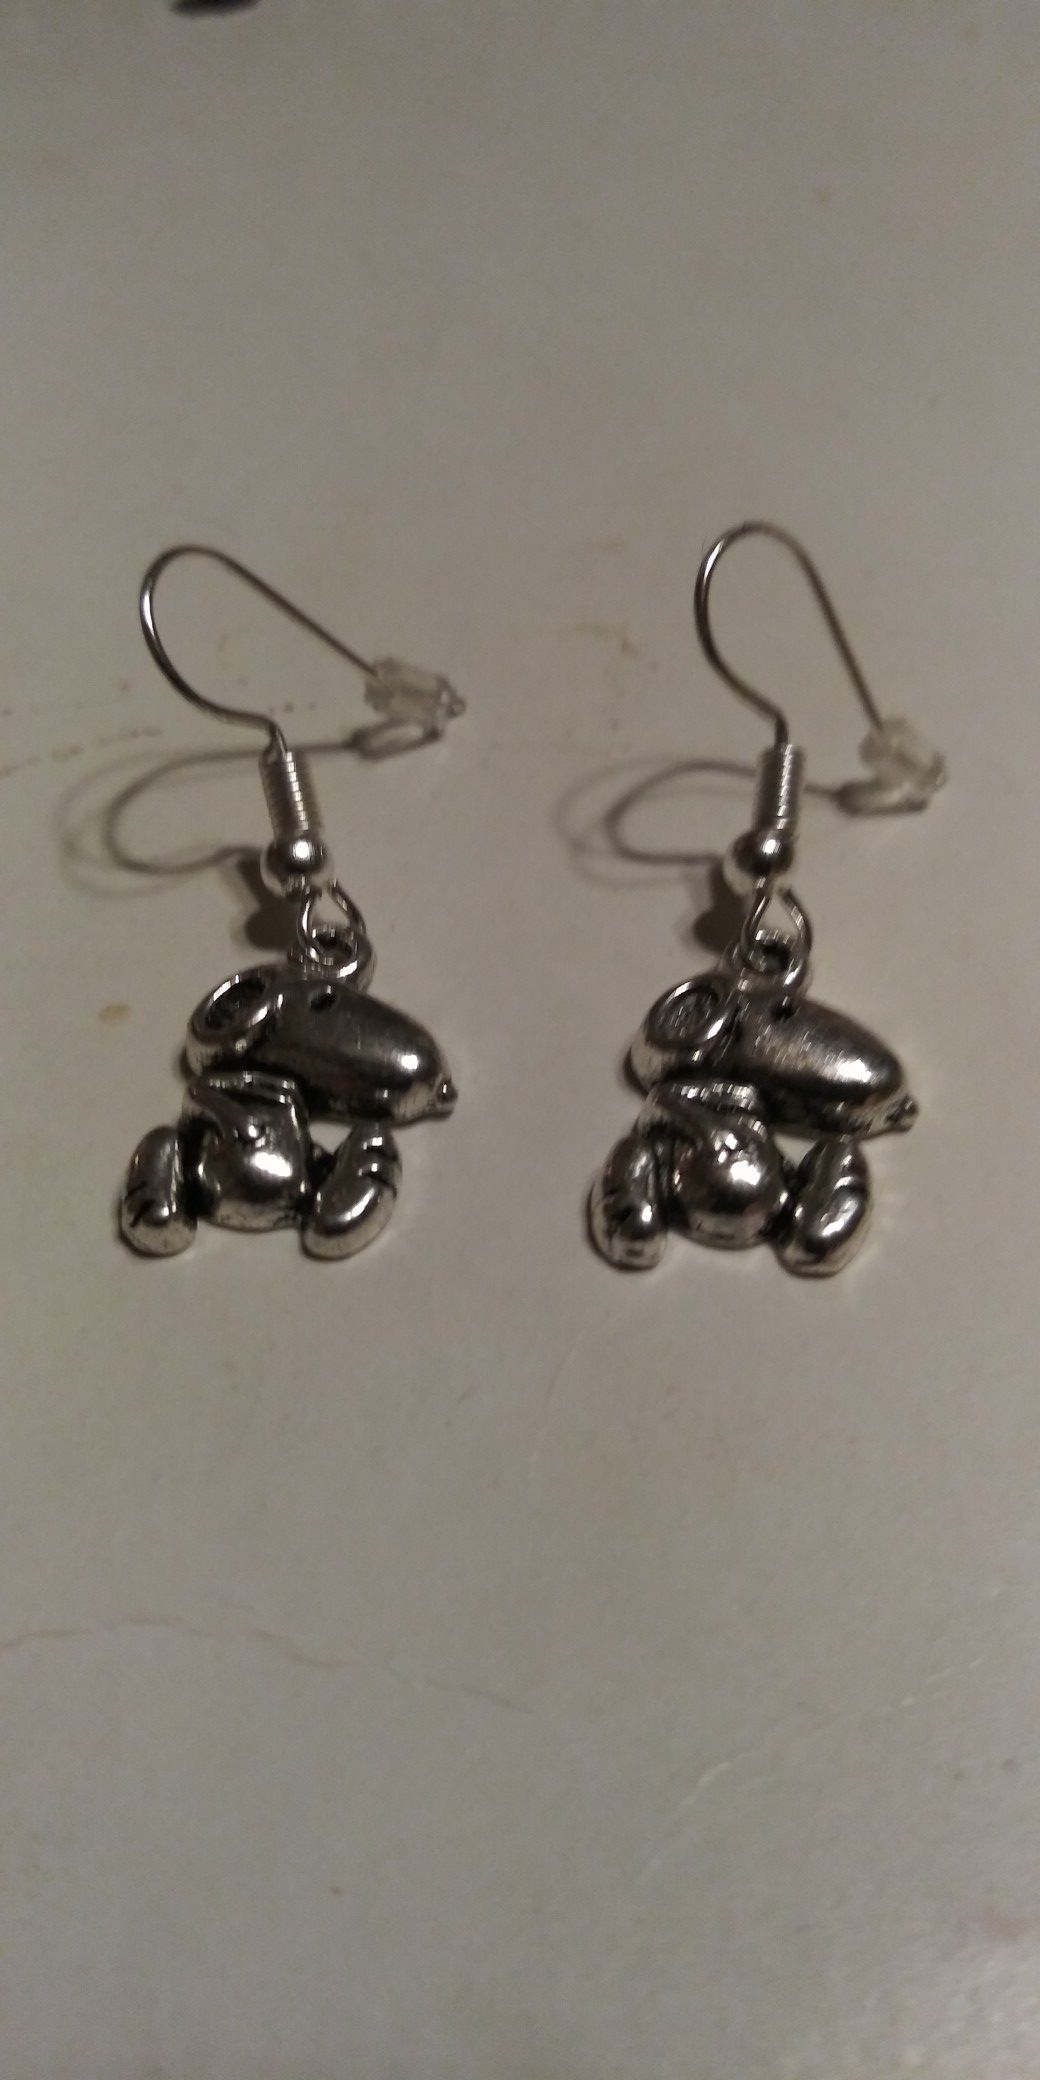 New! Snoopy earrings